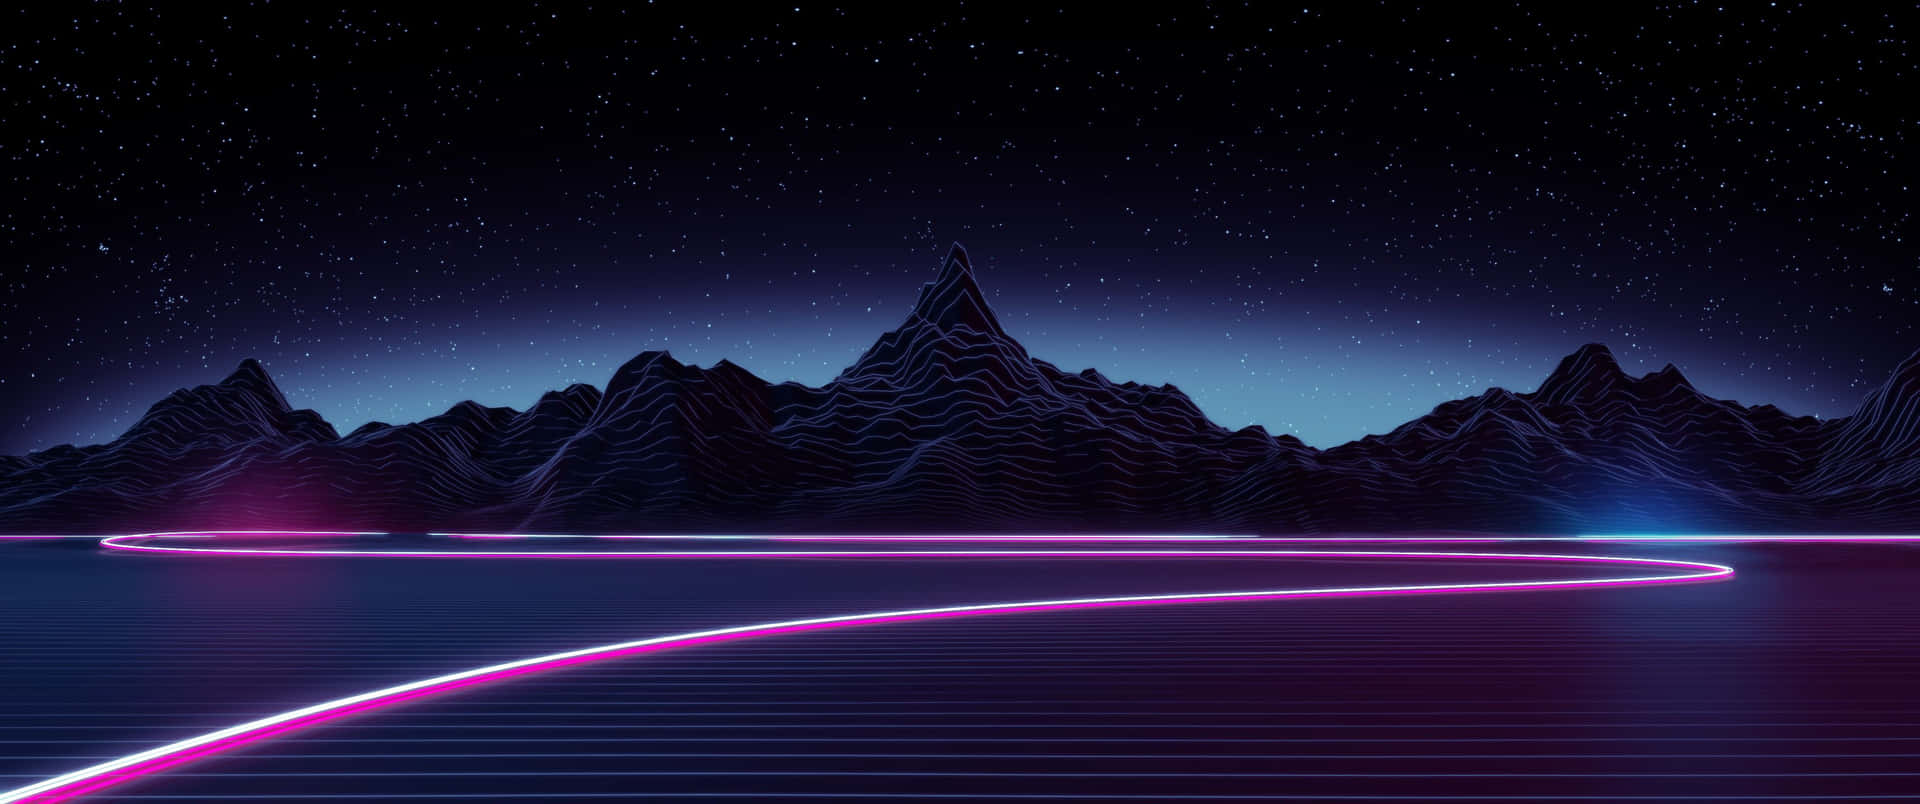 3440x1440p Vaporwave Neon Mountain baggrund